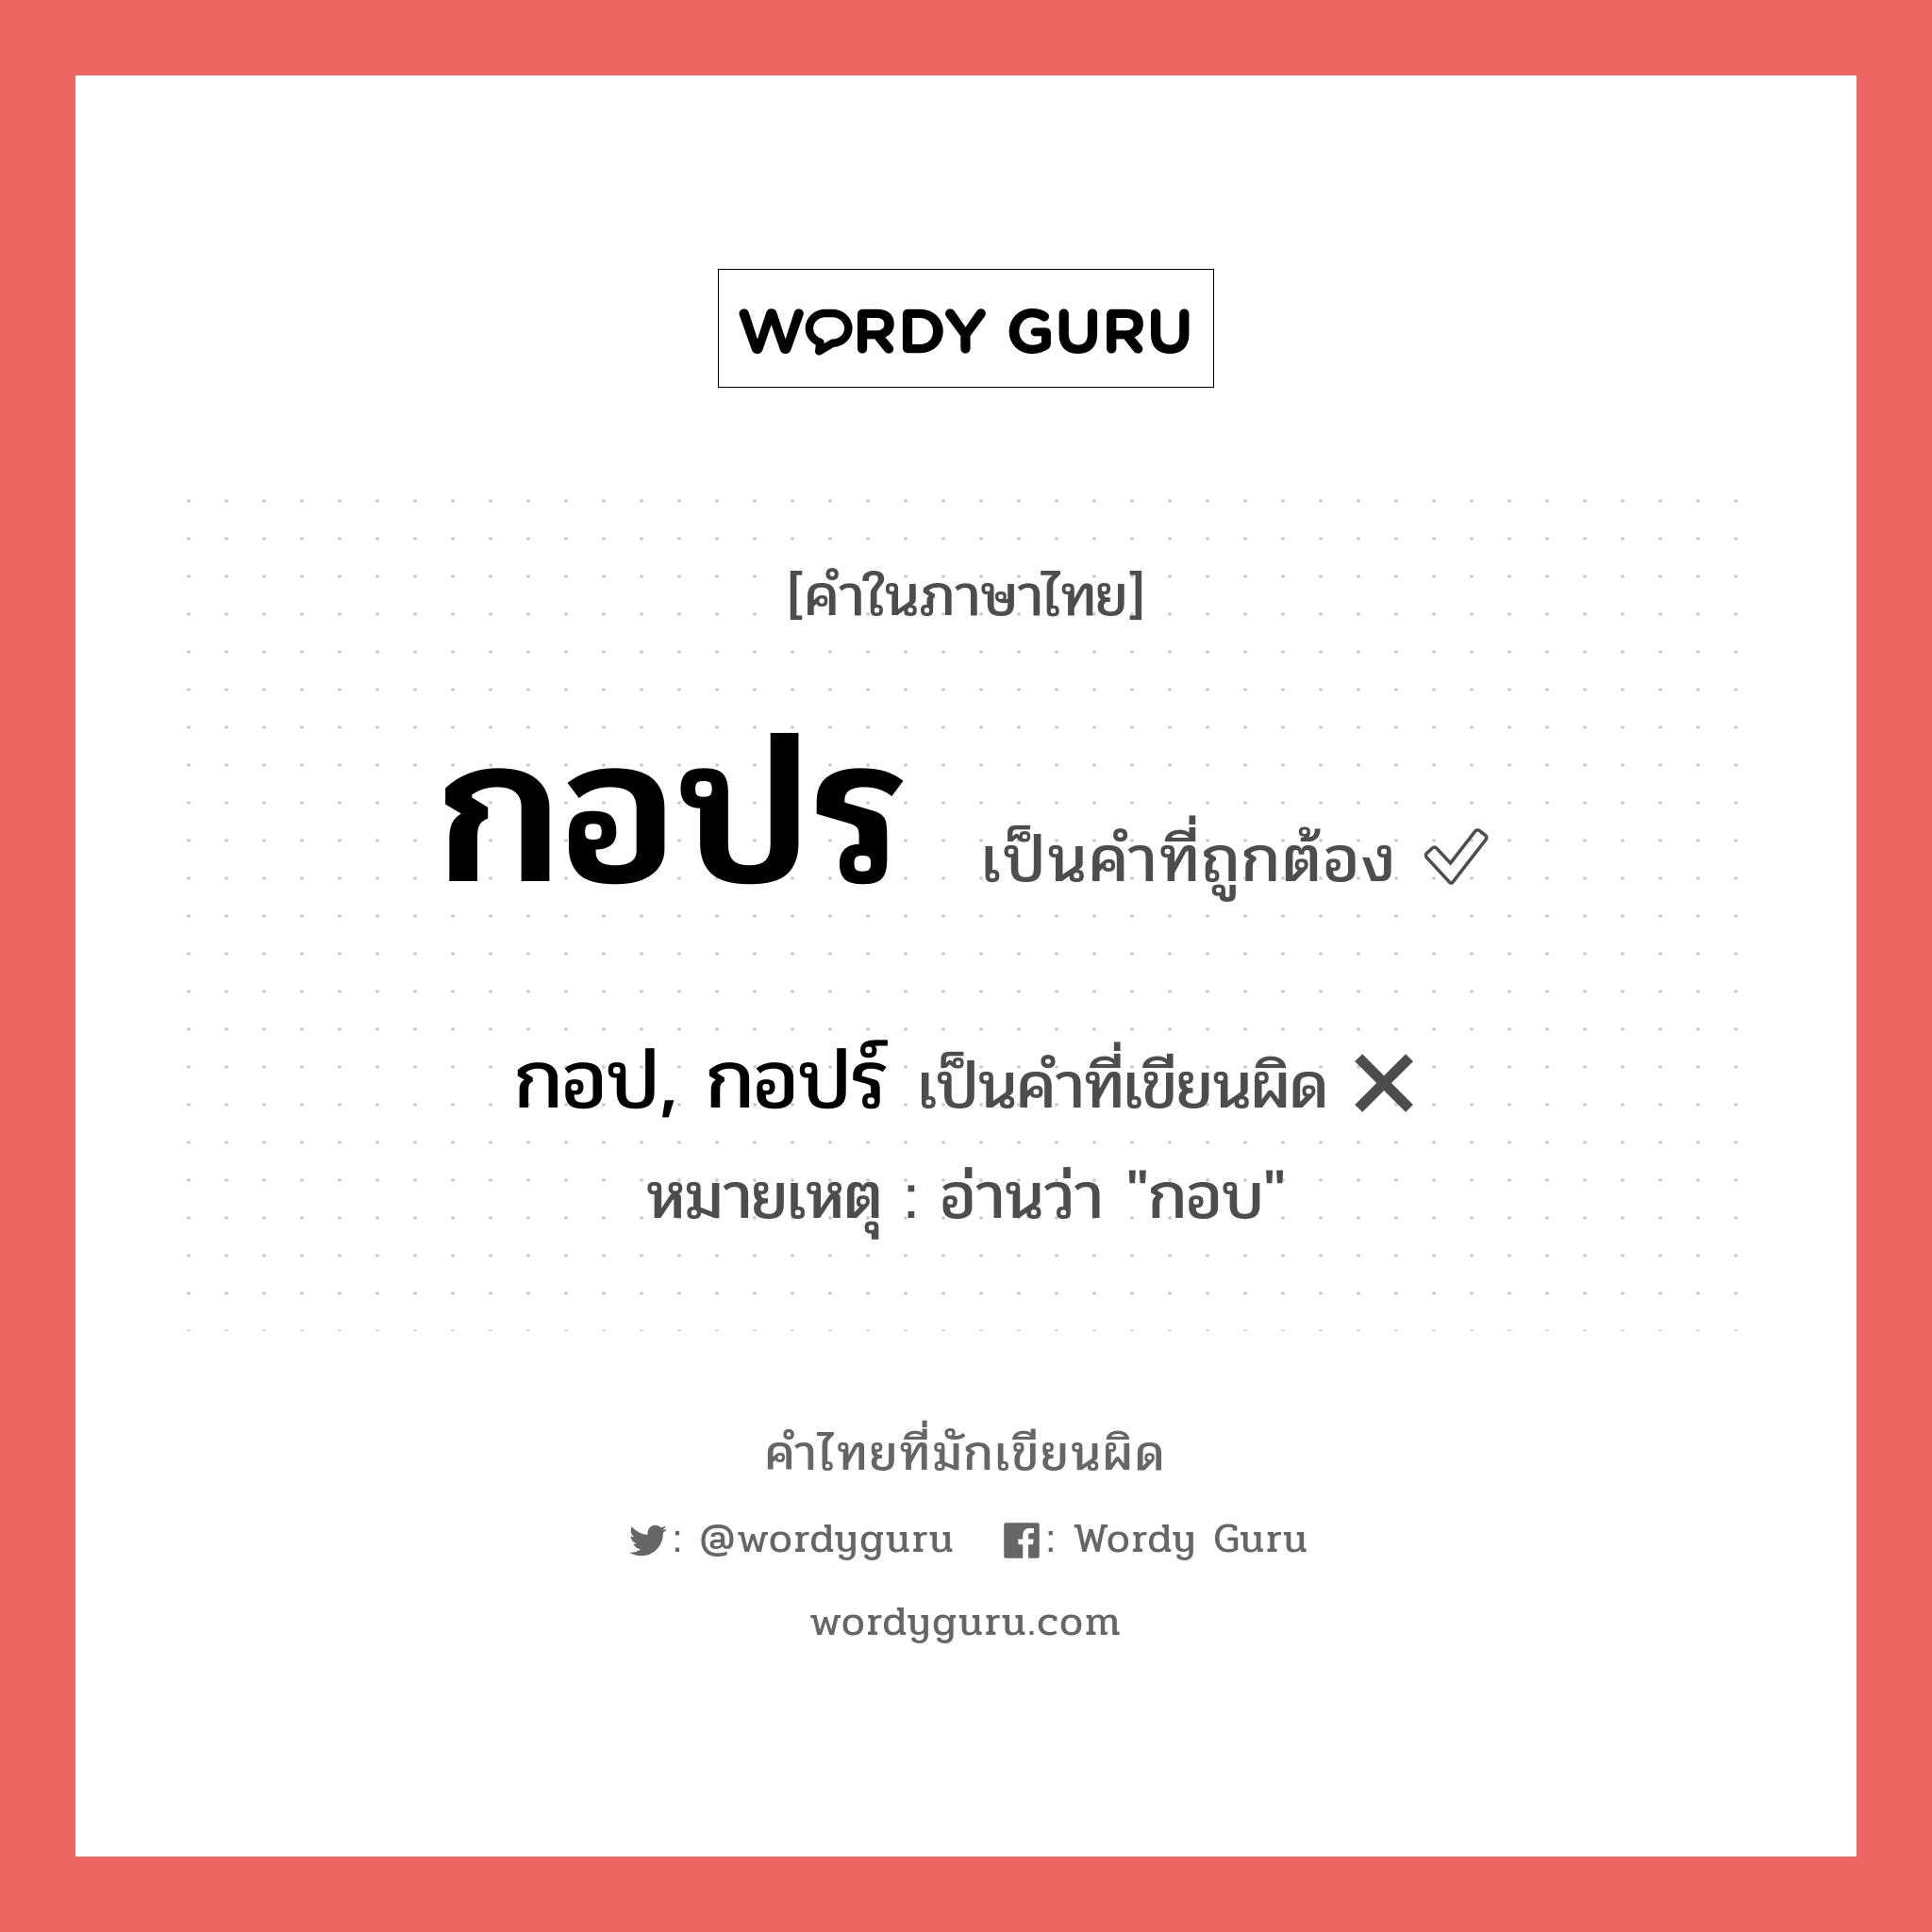 กอป, กอปร์ หรือ กอปร คำไหนเขียนถูก?, คำในภาษาไทยที่มักเขียนผิด กอป, กอปร์ คำที่ผิด ❌ กอปร หมายเหตุ อ่านว่า "กอบ"